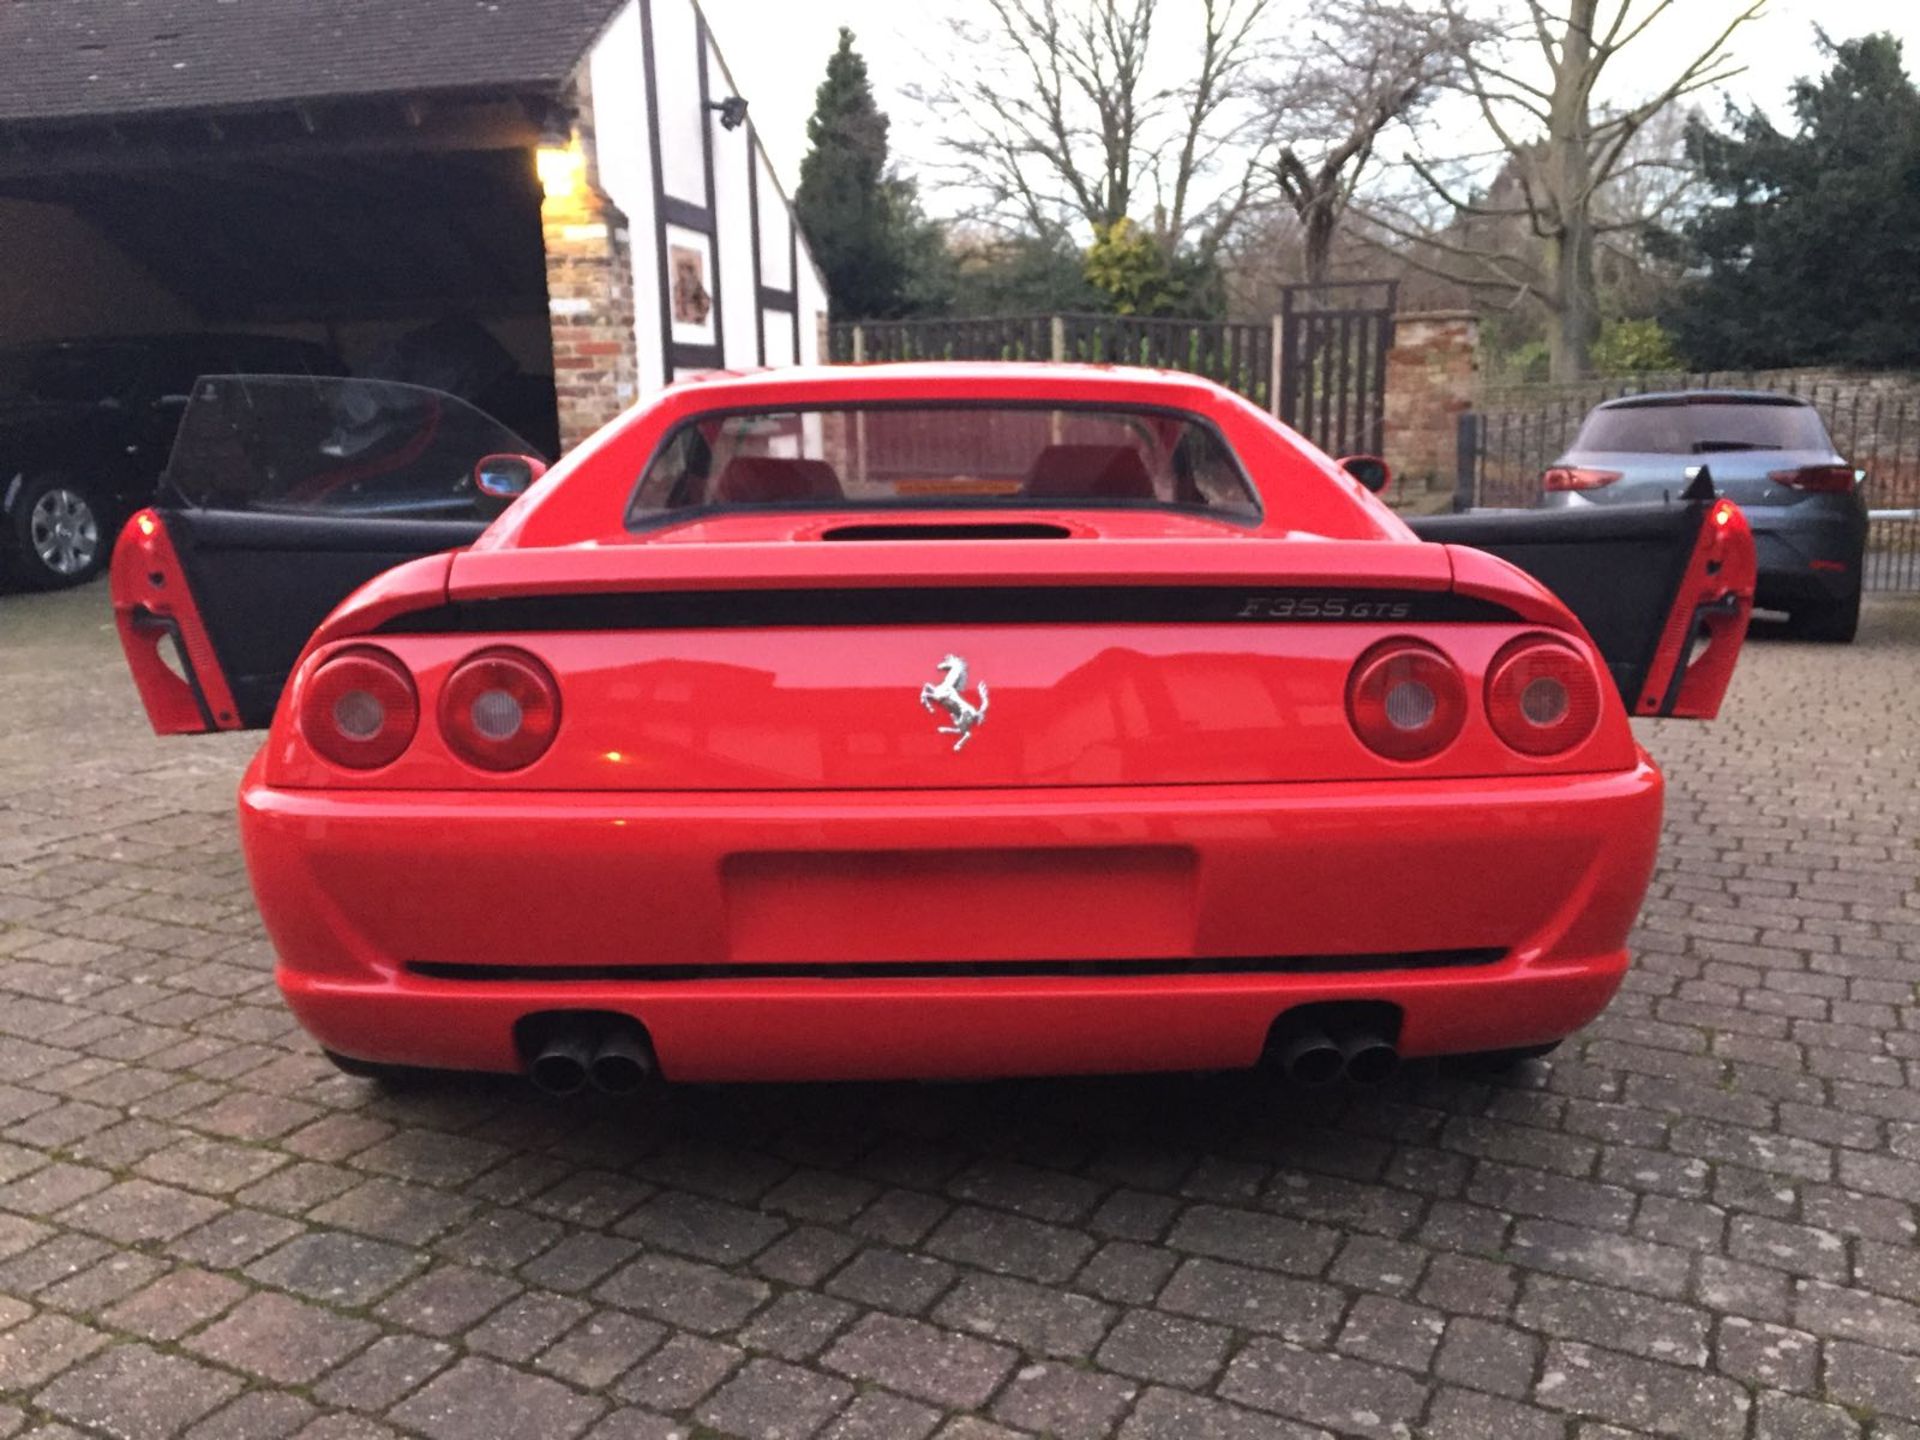 RHD 1996 Ferrari 355 GTS (Rare Manual Targa) - Image 9 of 40